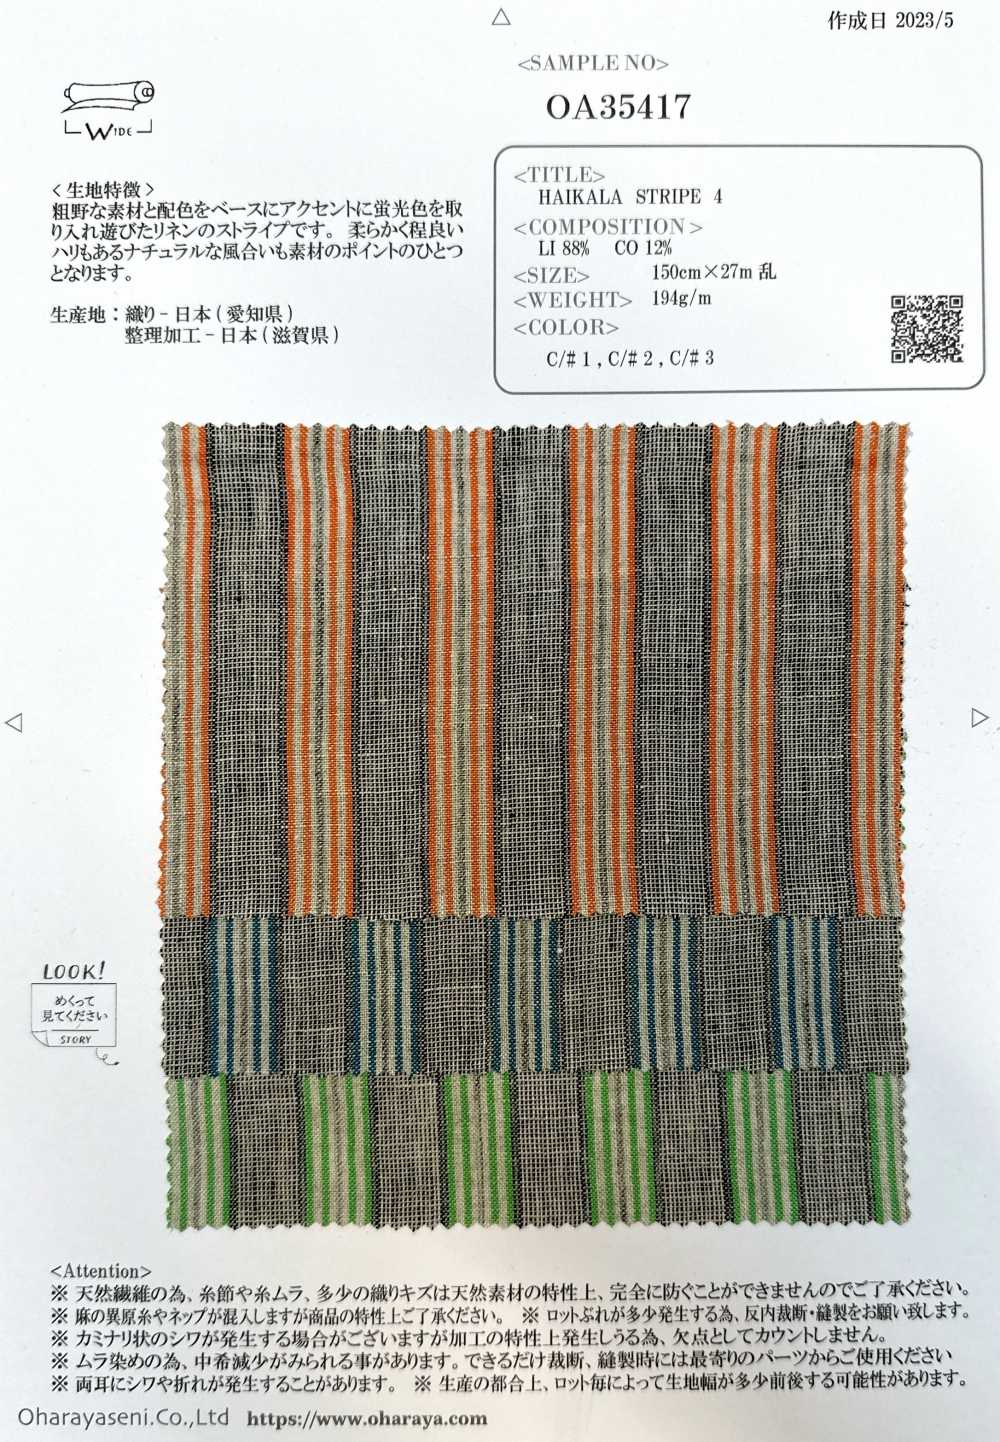 OA35417 RAYA HAIKARA 4[Fabrica Textil] Oharayaseni